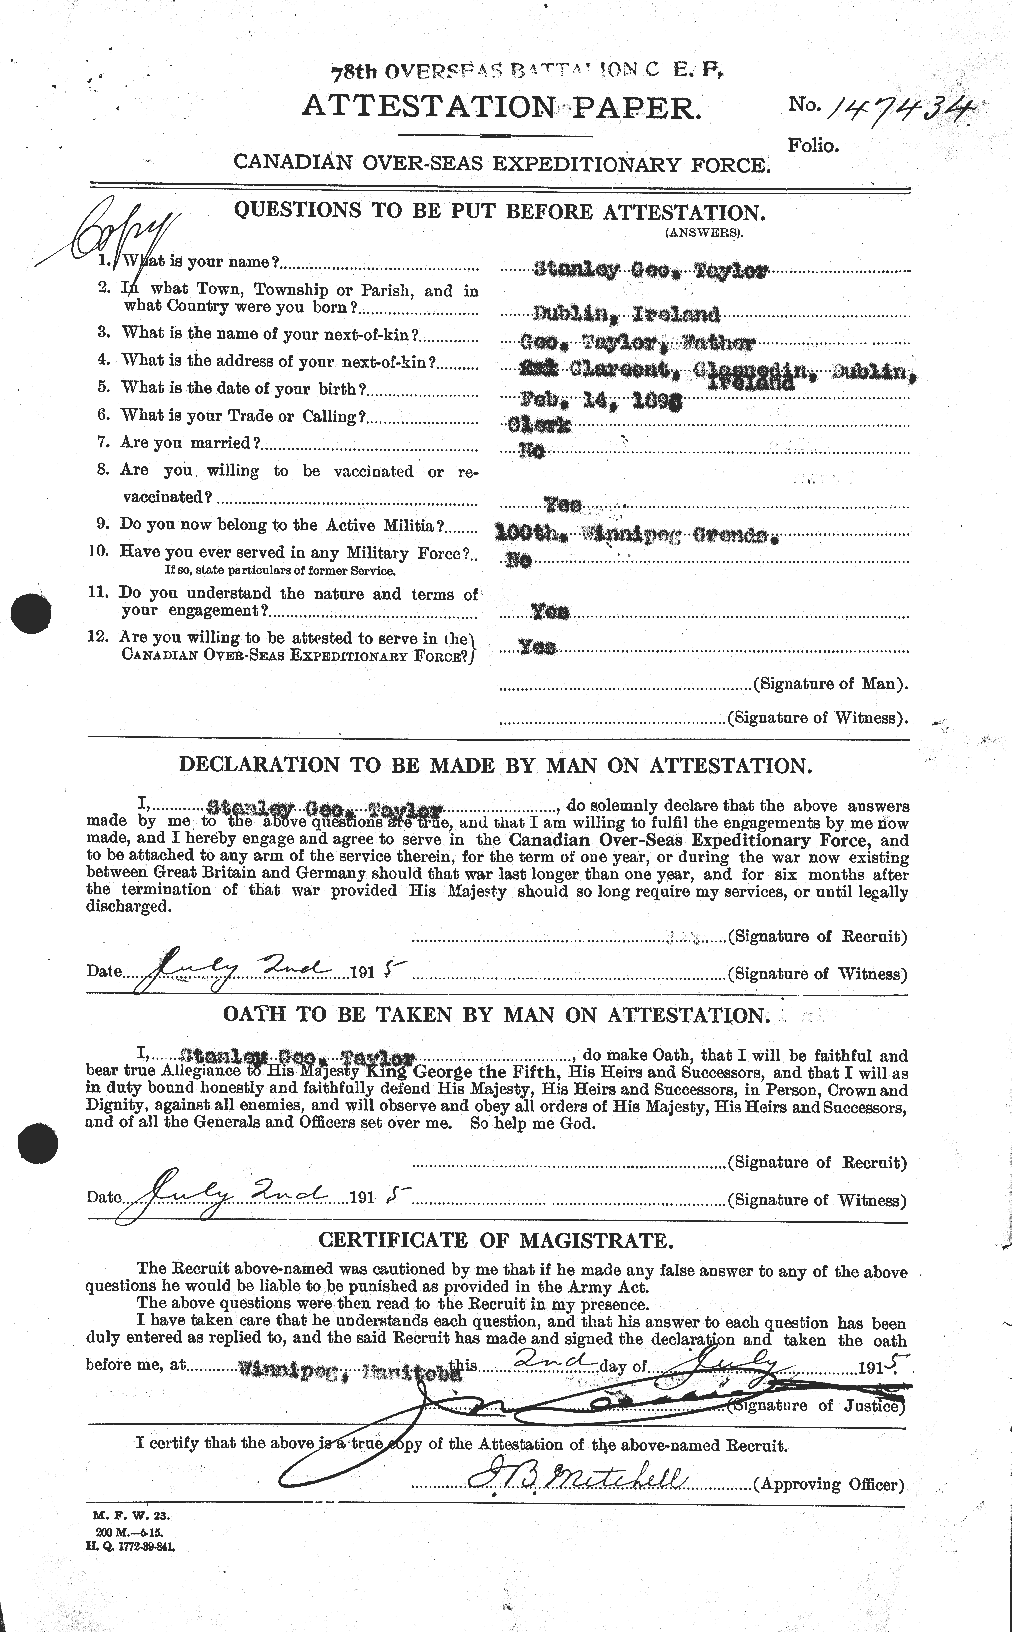 Dossiers du Personnel de la Première Guerre mondiale - CEC 627919a